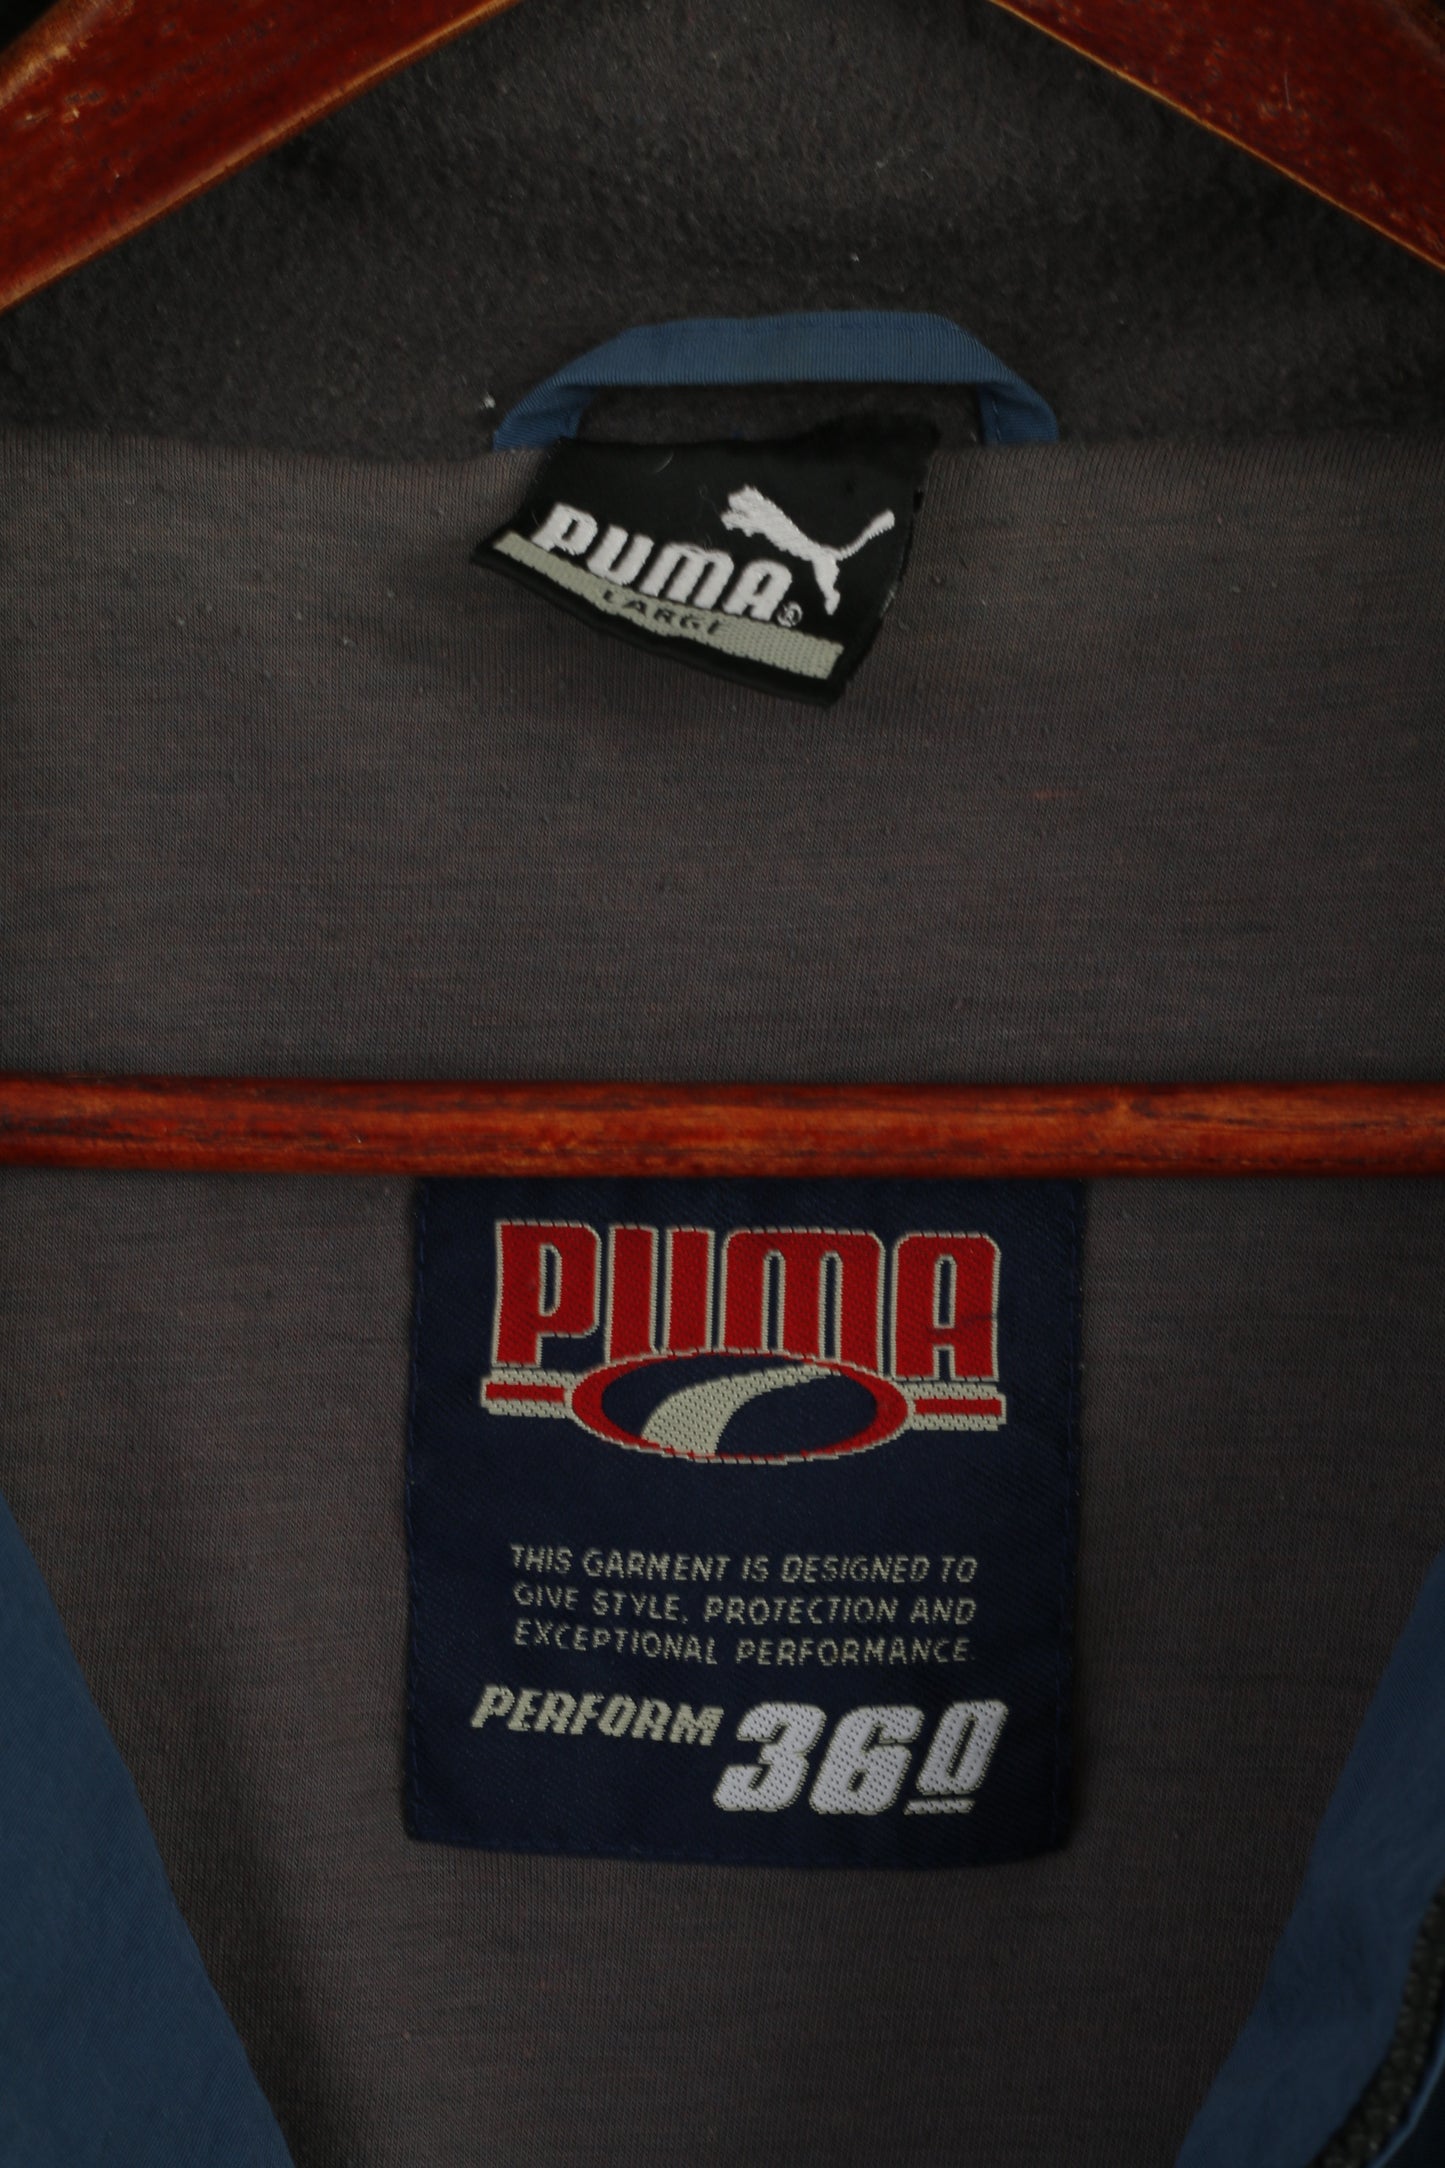 Puma Men L Jacket Blue Nylon Perform 360 Full Zipper Vintage Casual Top